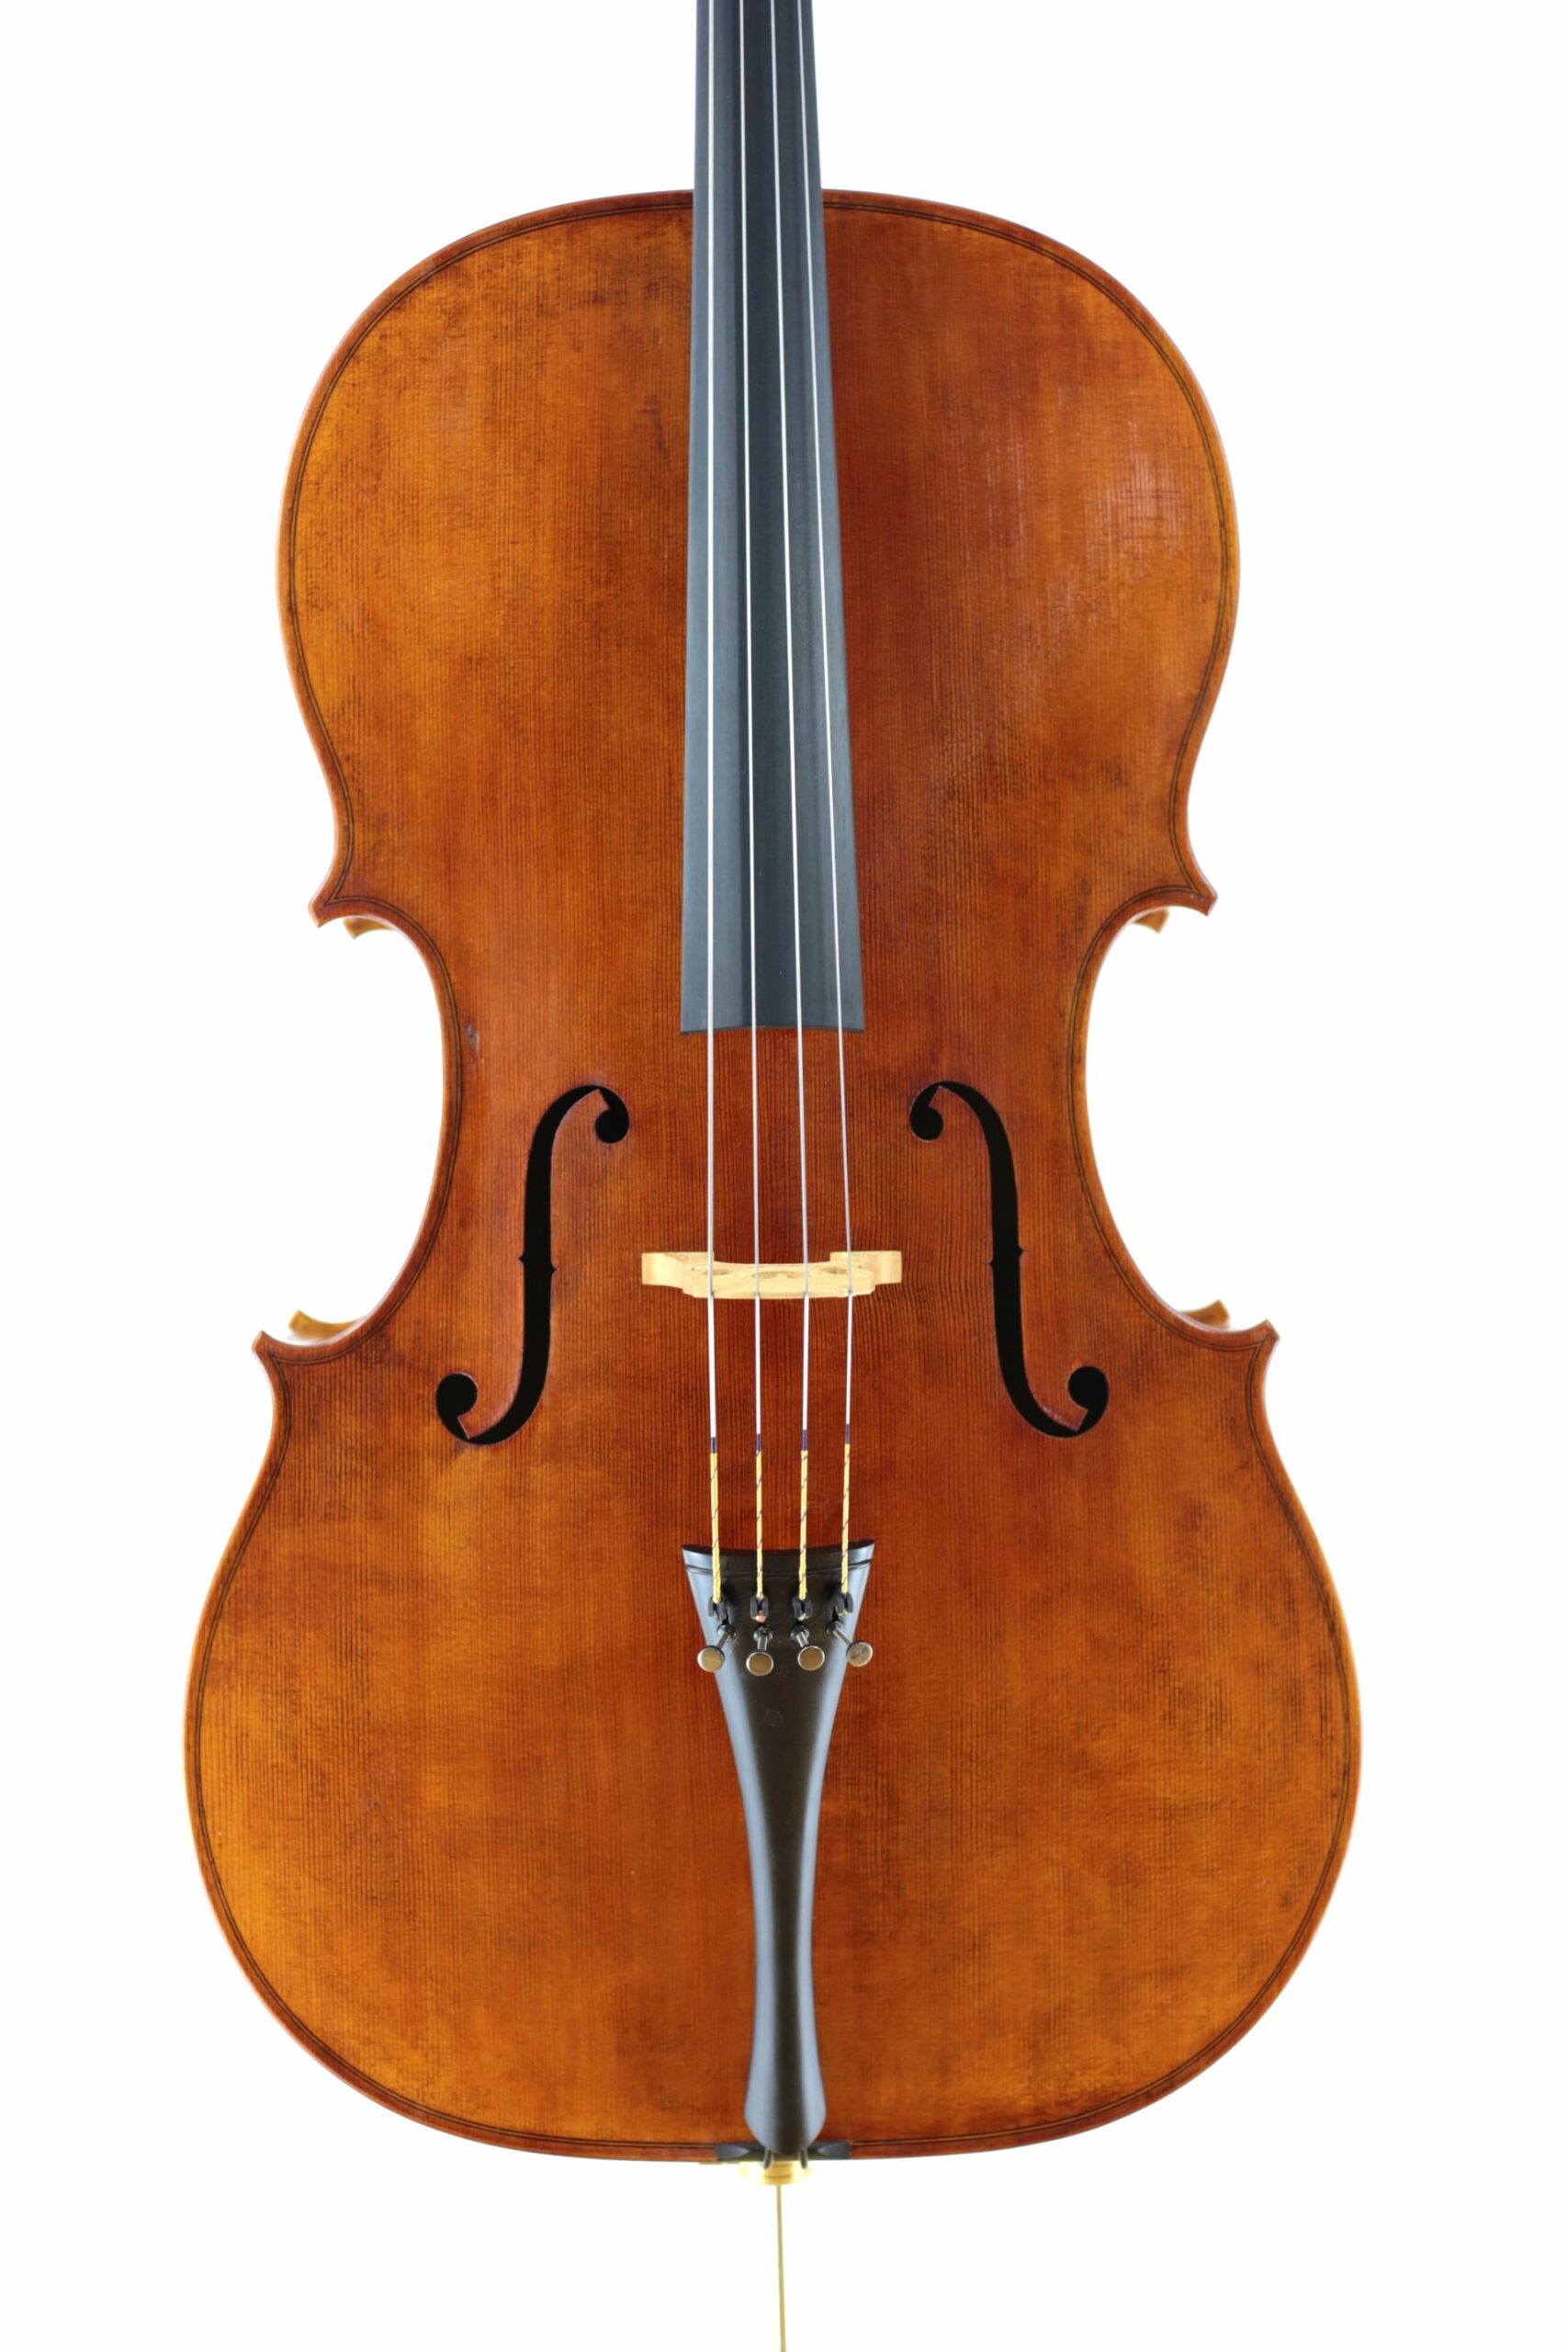 Pietro Rogeri 1717 model cello 2019